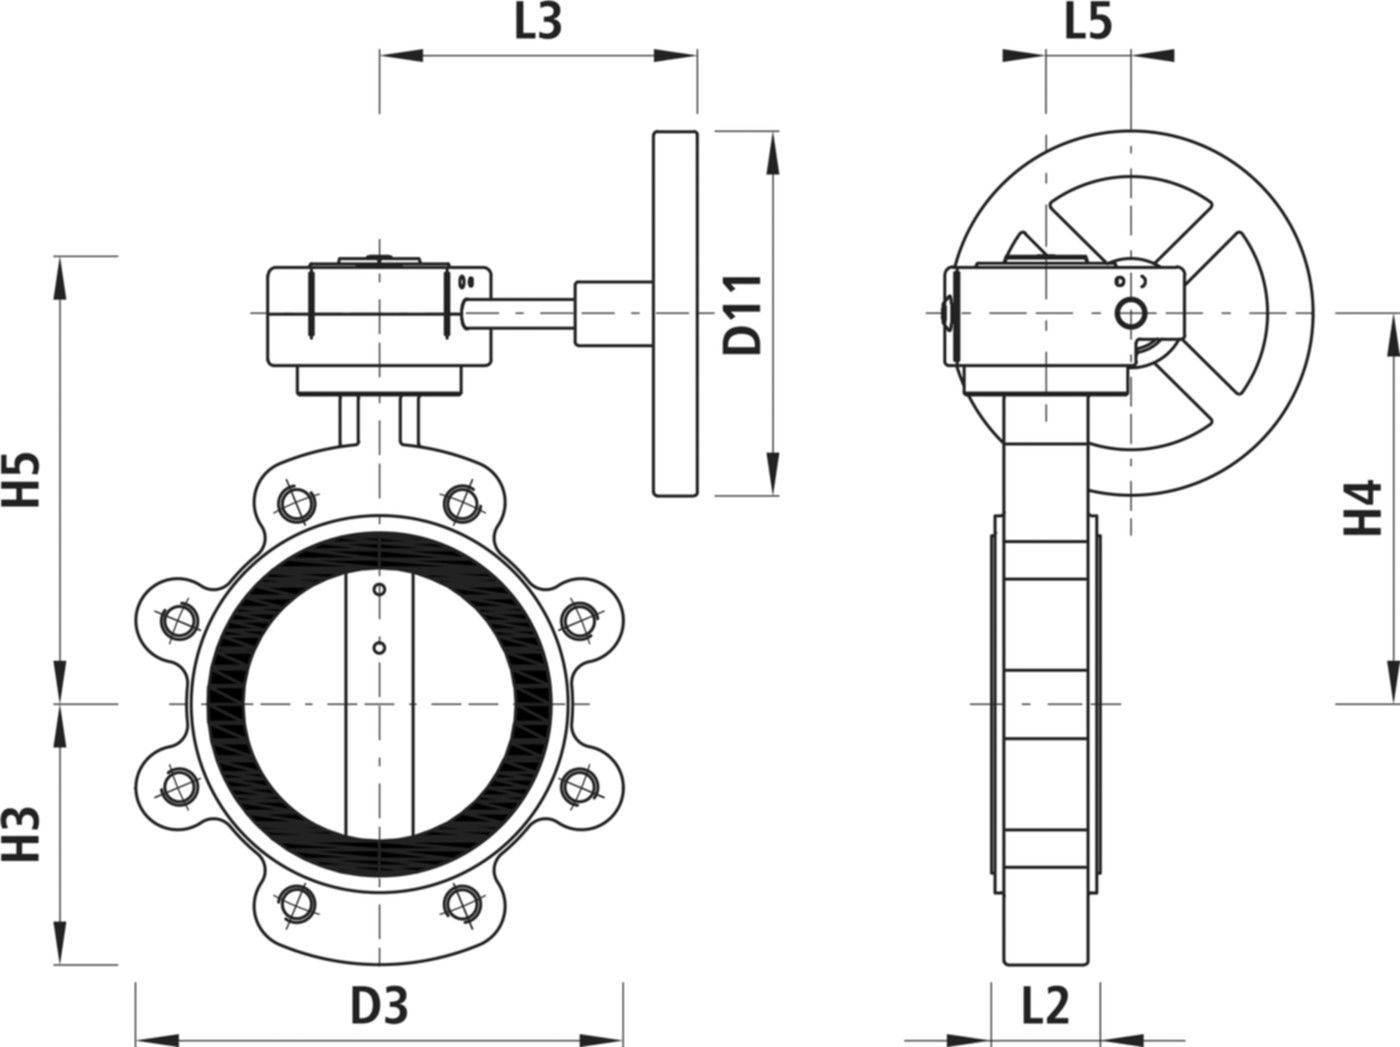 Absperrklappe mit Getriebe Typ LI 9943 DN 65 PN 16 - Hawle Absperrklappen